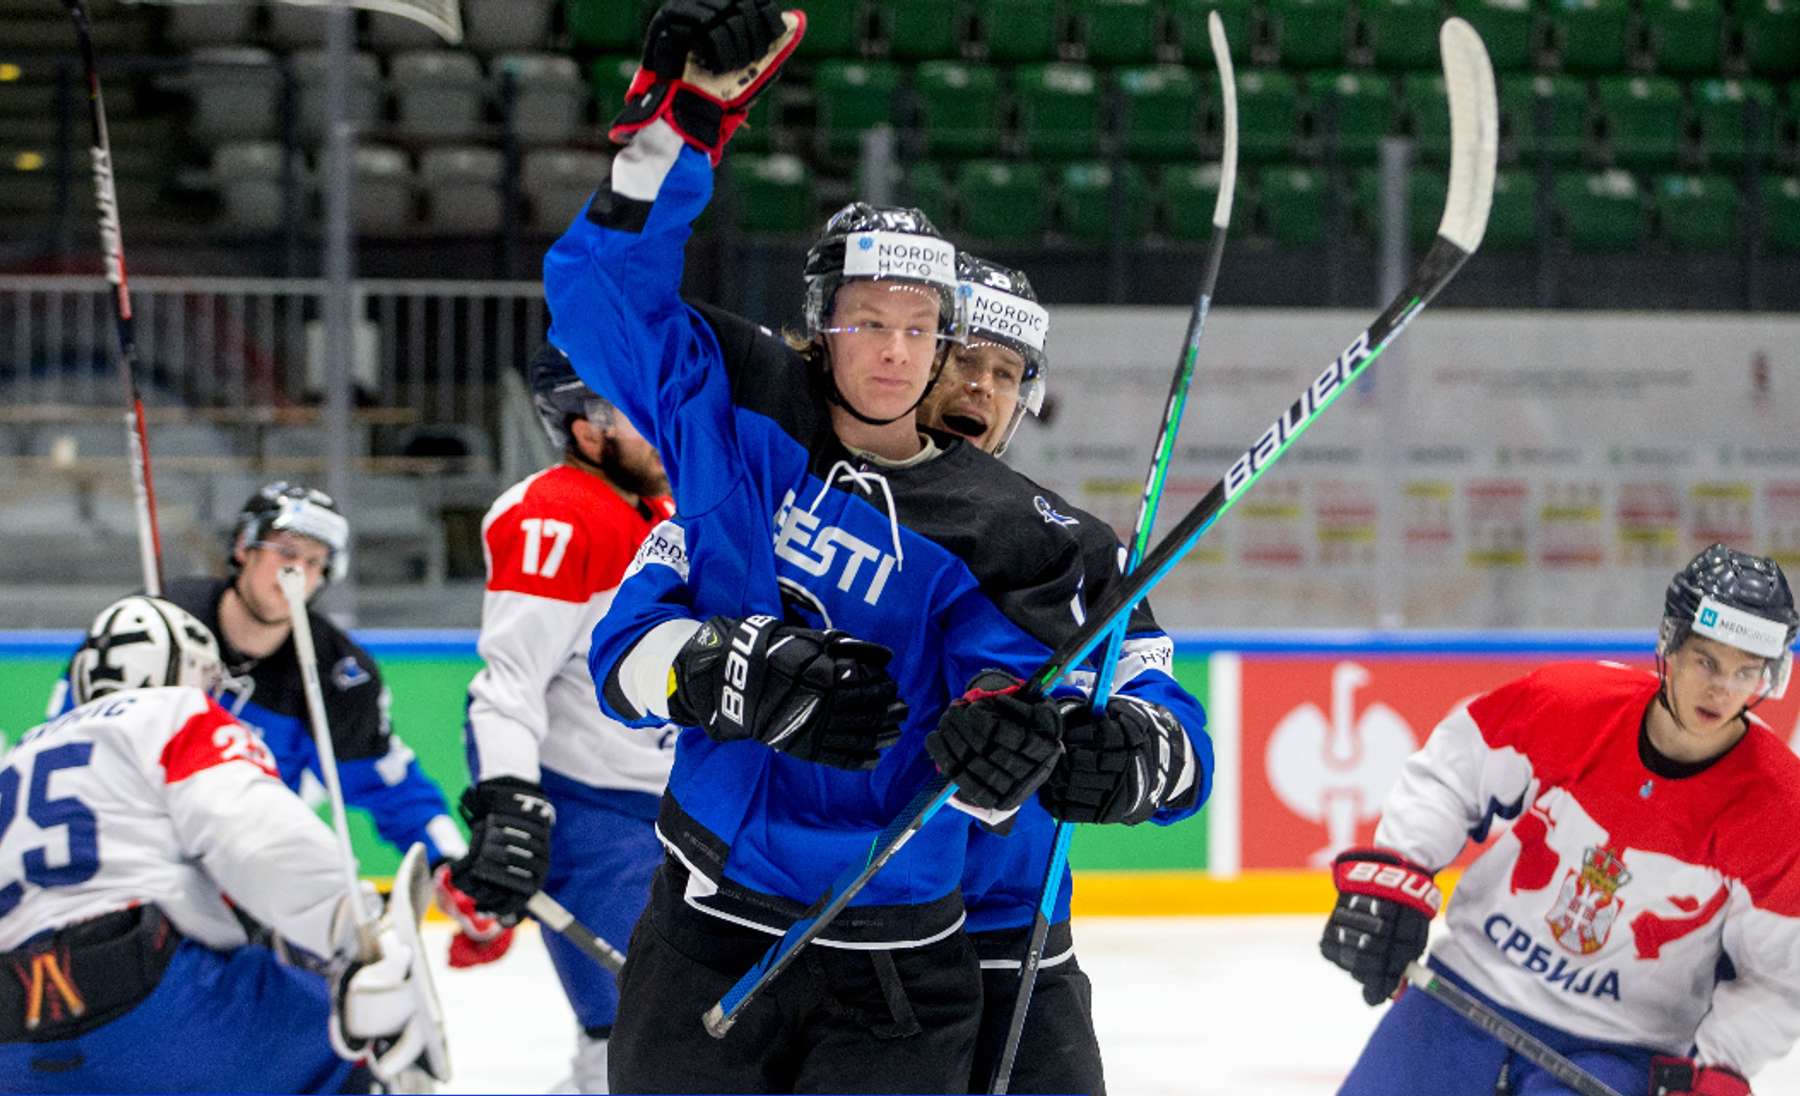 Eesti jäähokimängijad väravat tähistamas